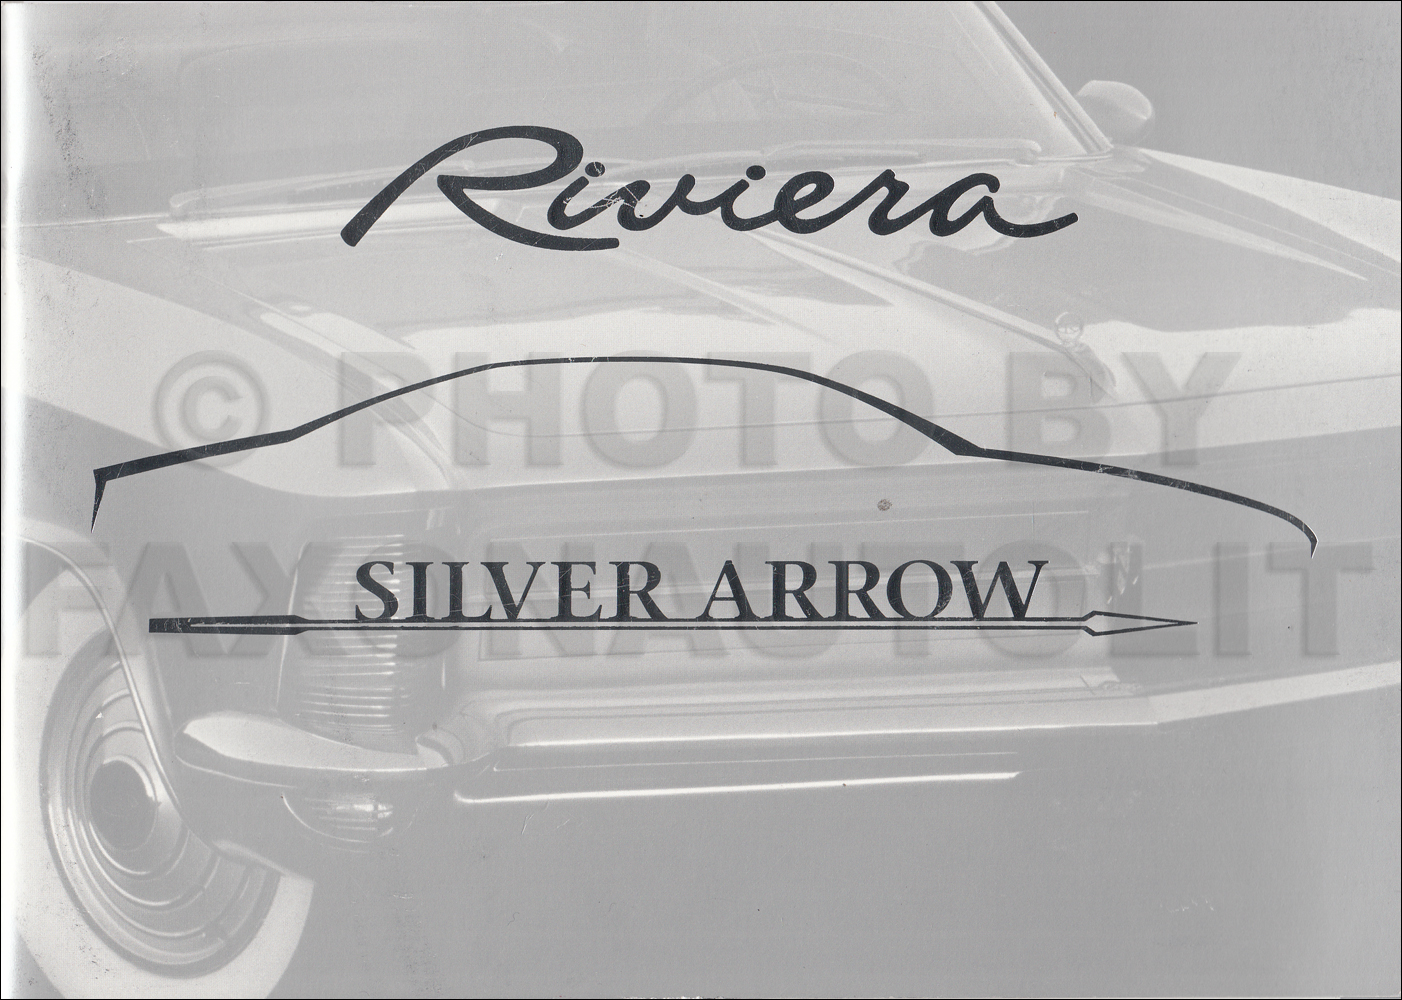 1999 Buick Riviera Silver Arrow Original Sales Catalog with 1963-1999 Riviera History